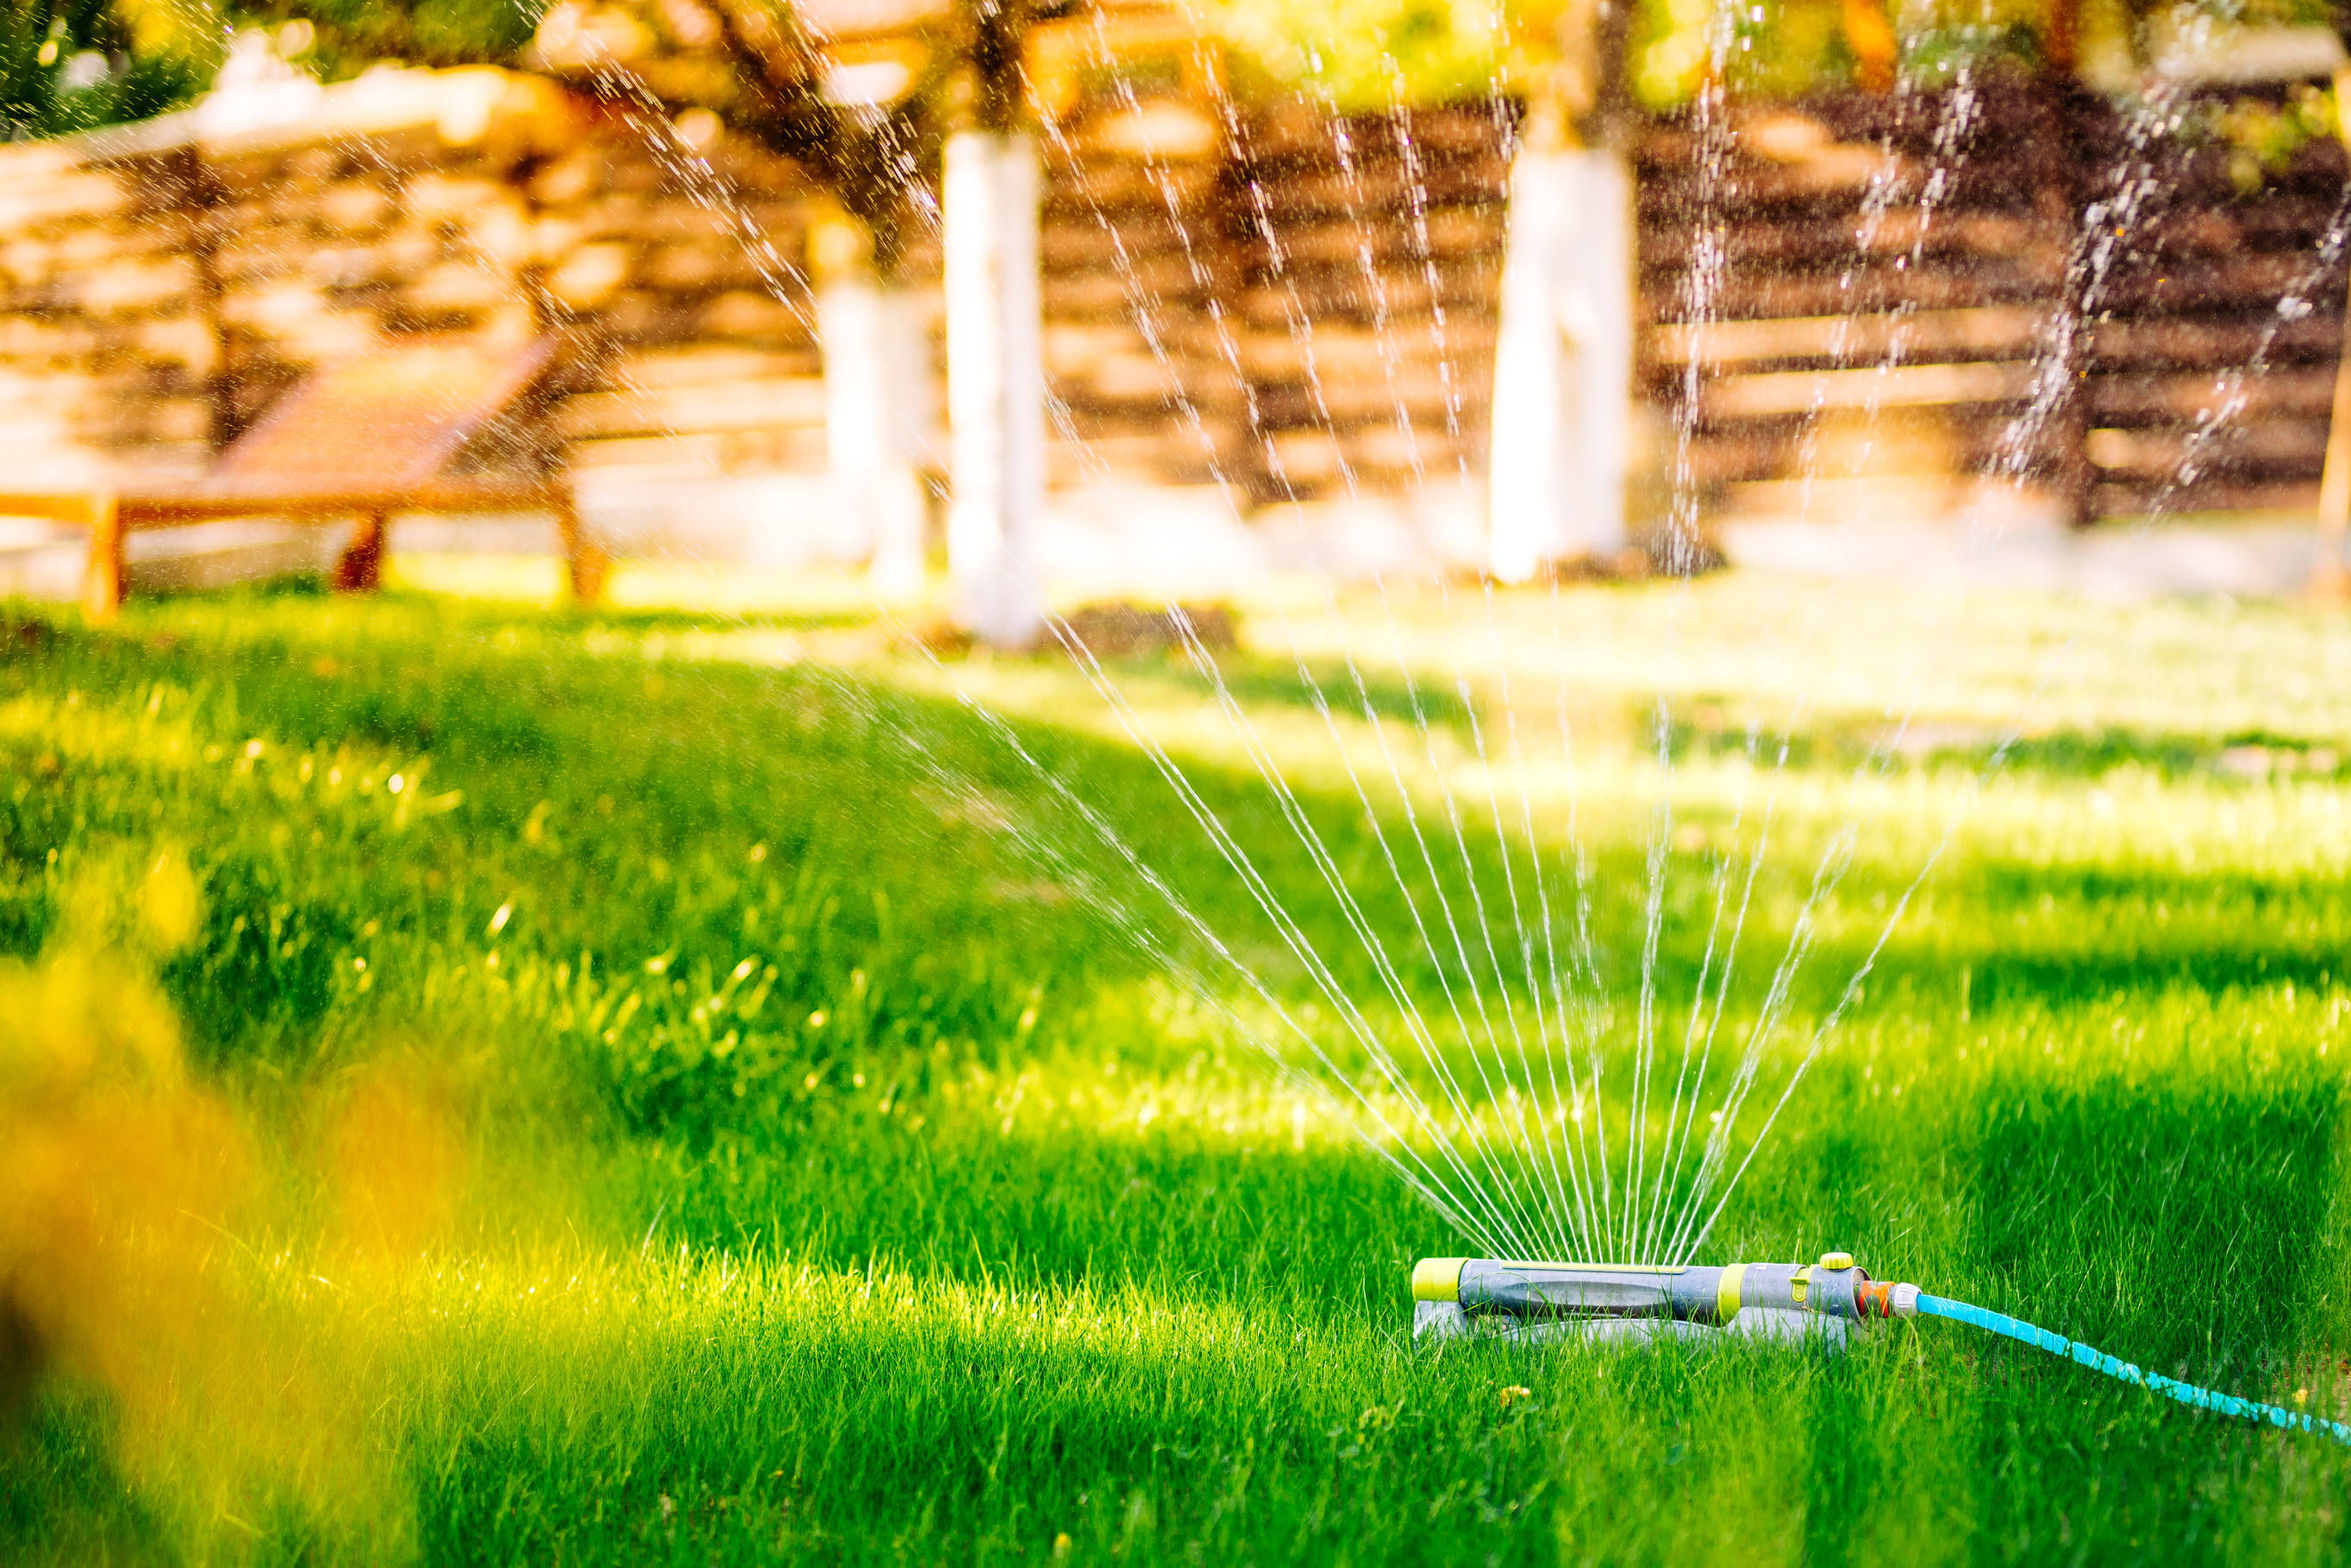 Lawn water sprinkler watering lawn green fresh grass in backyard